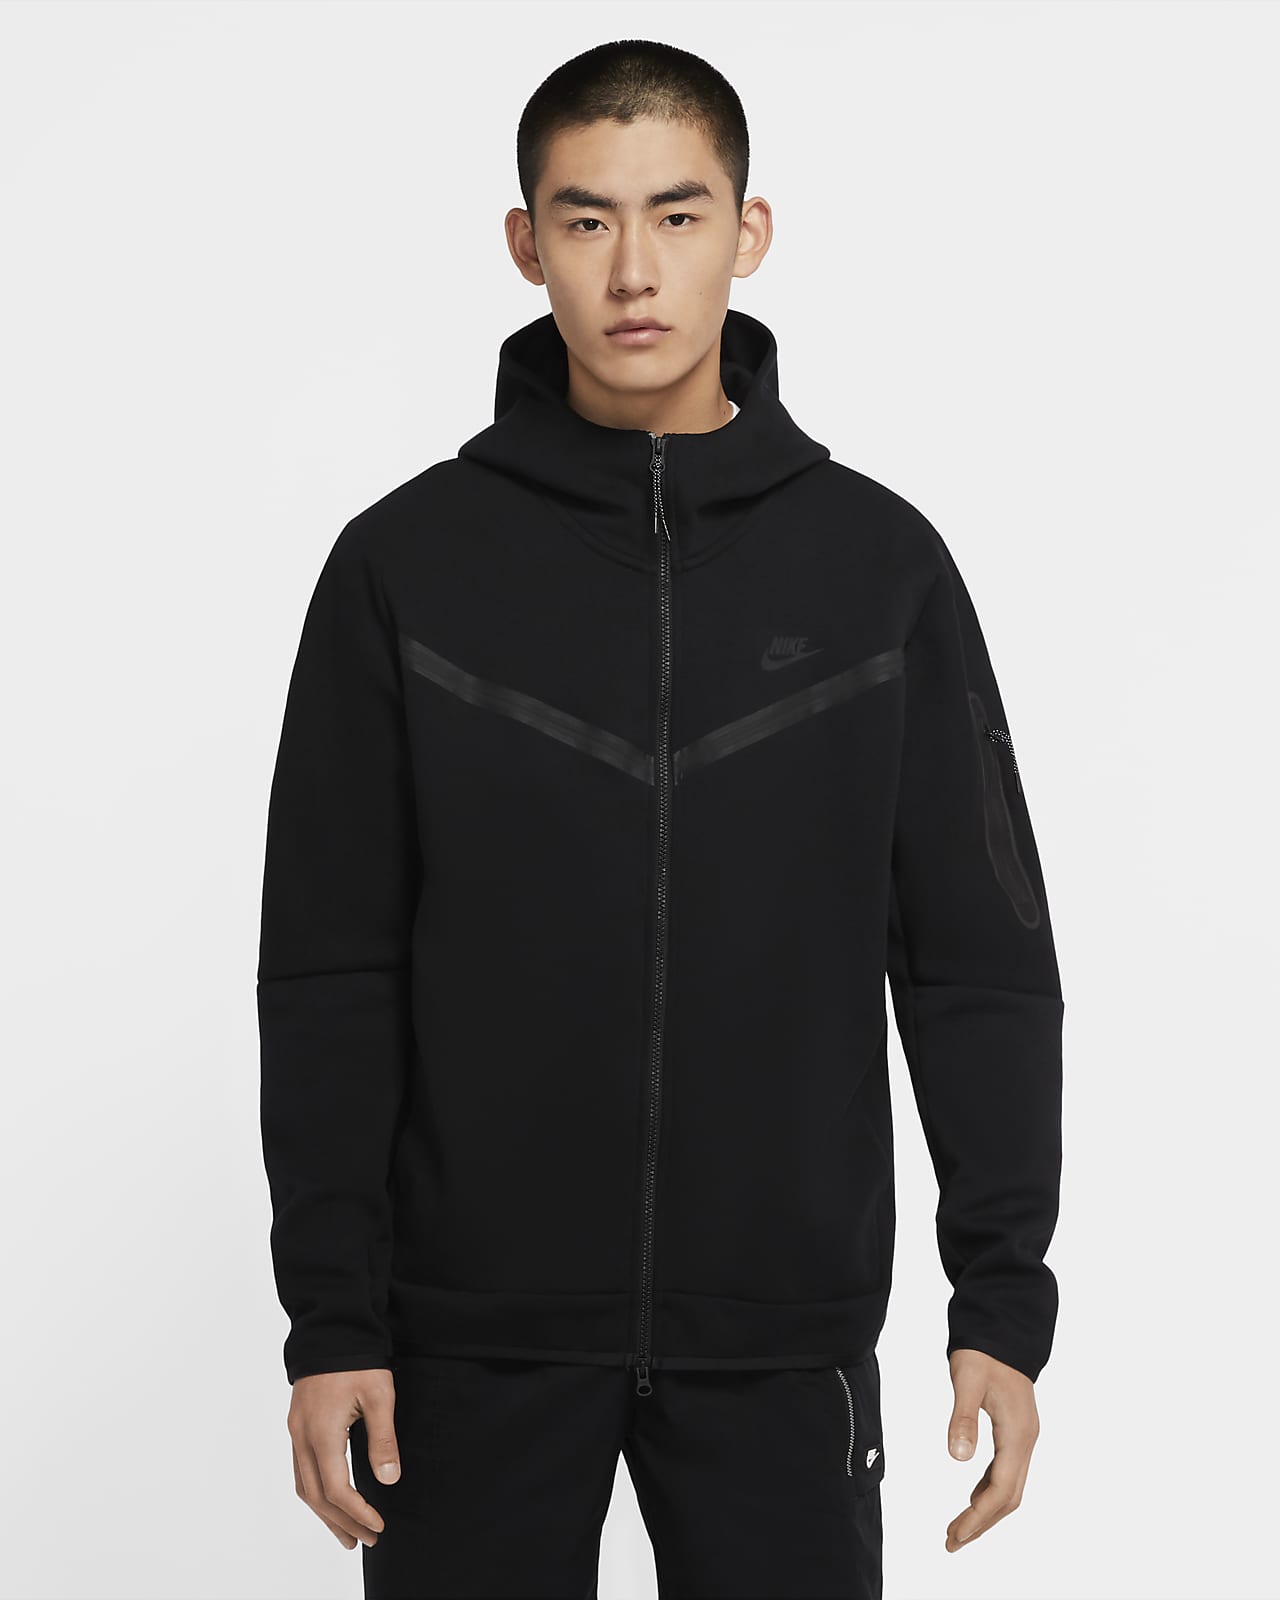 black nike zip hoodie men's